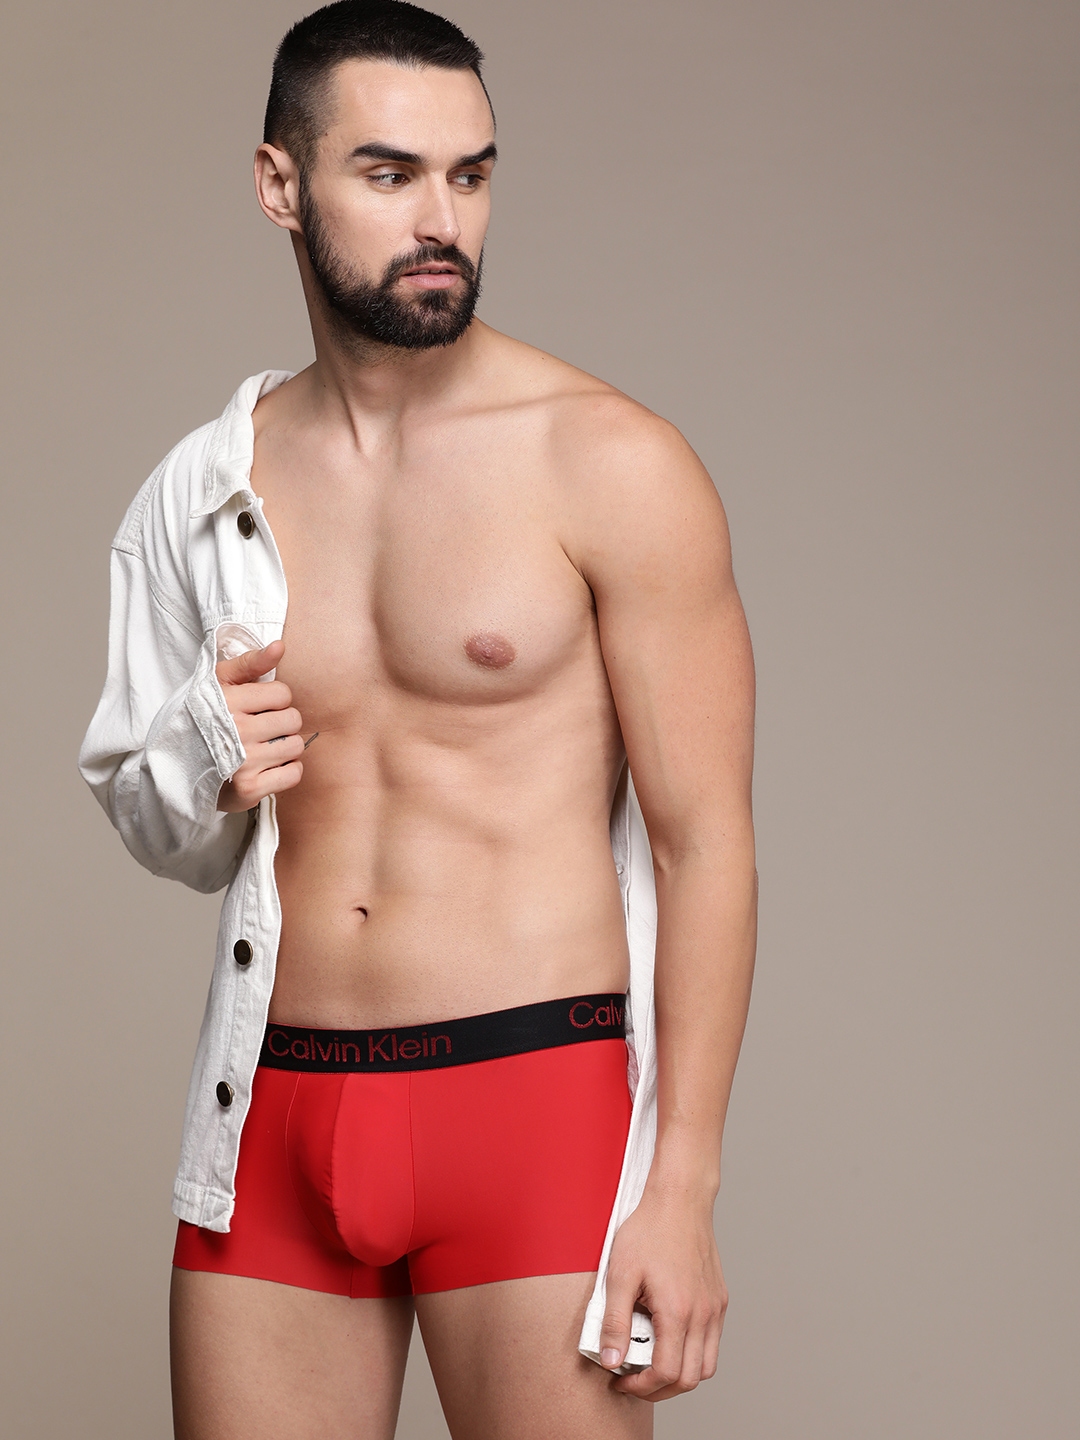  Calvin Klein Underwear For Men